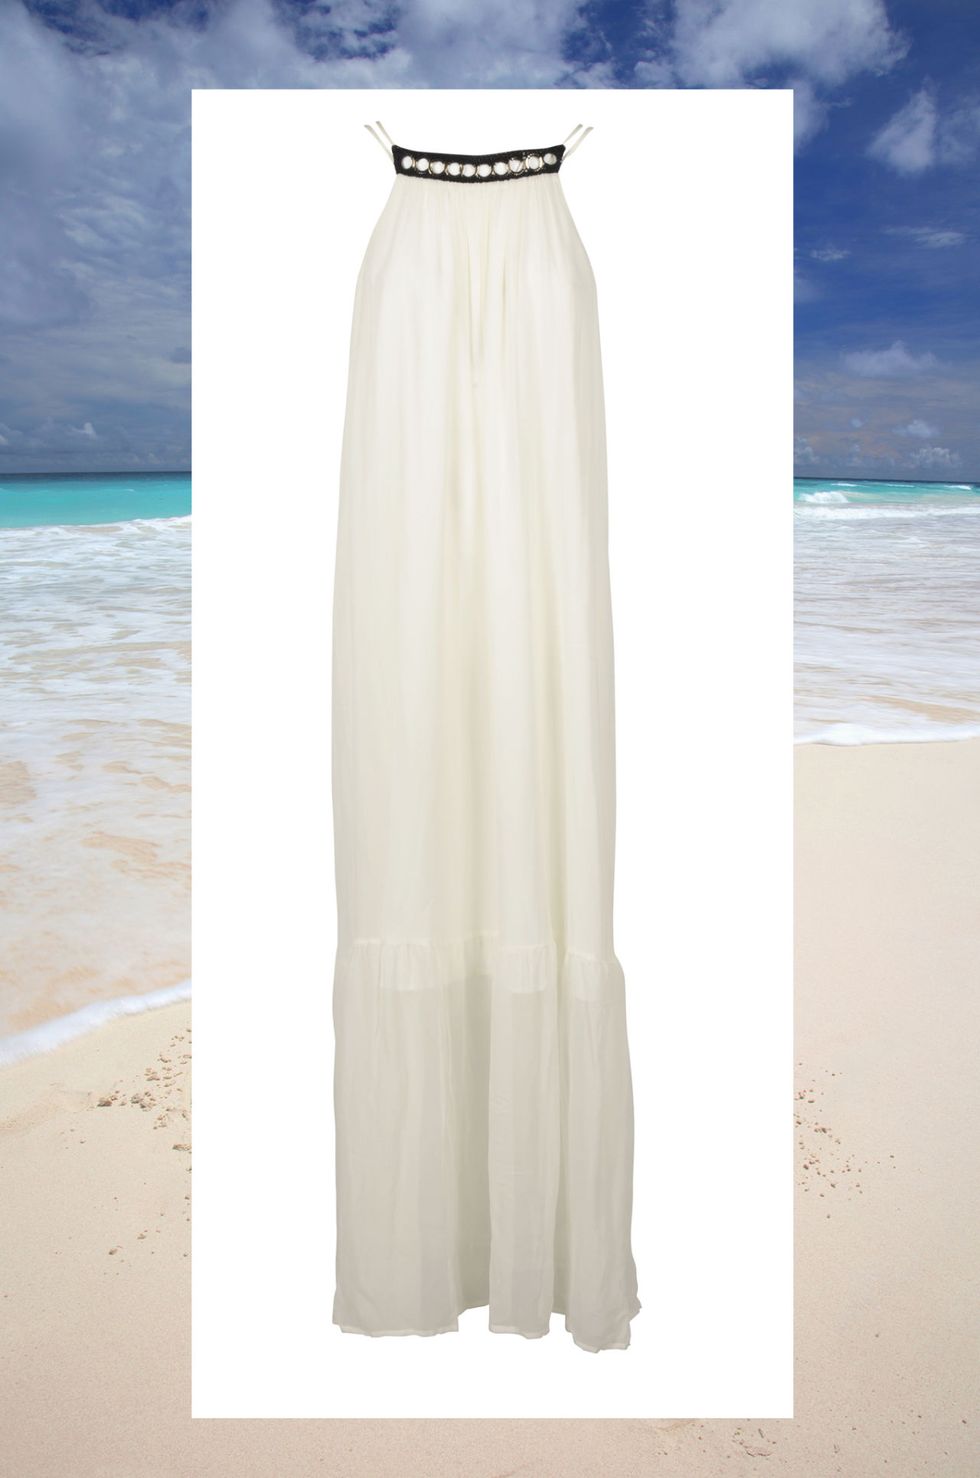 Hai deciso di sposarti in riva al mare: per un matrimonio in spiaggia occorre un abito da sposa che sia in sintonia con lo scenario,vento incluso.